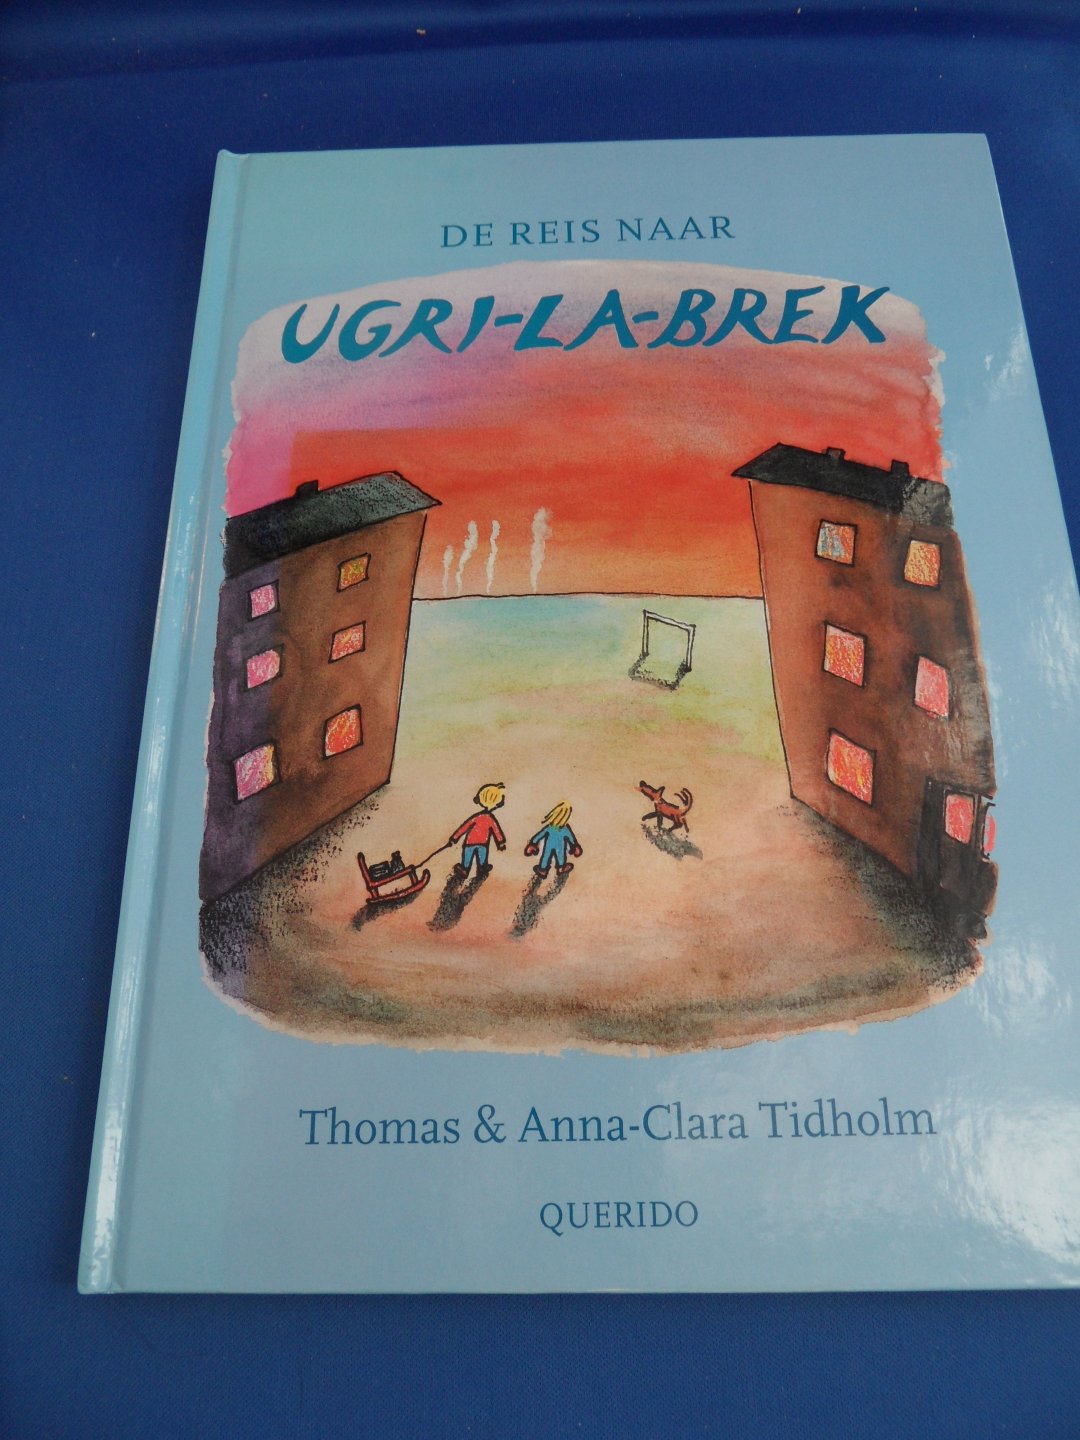 Tidholm, Thomas & Anna-Clara - De reis naar Ugri-la-brek